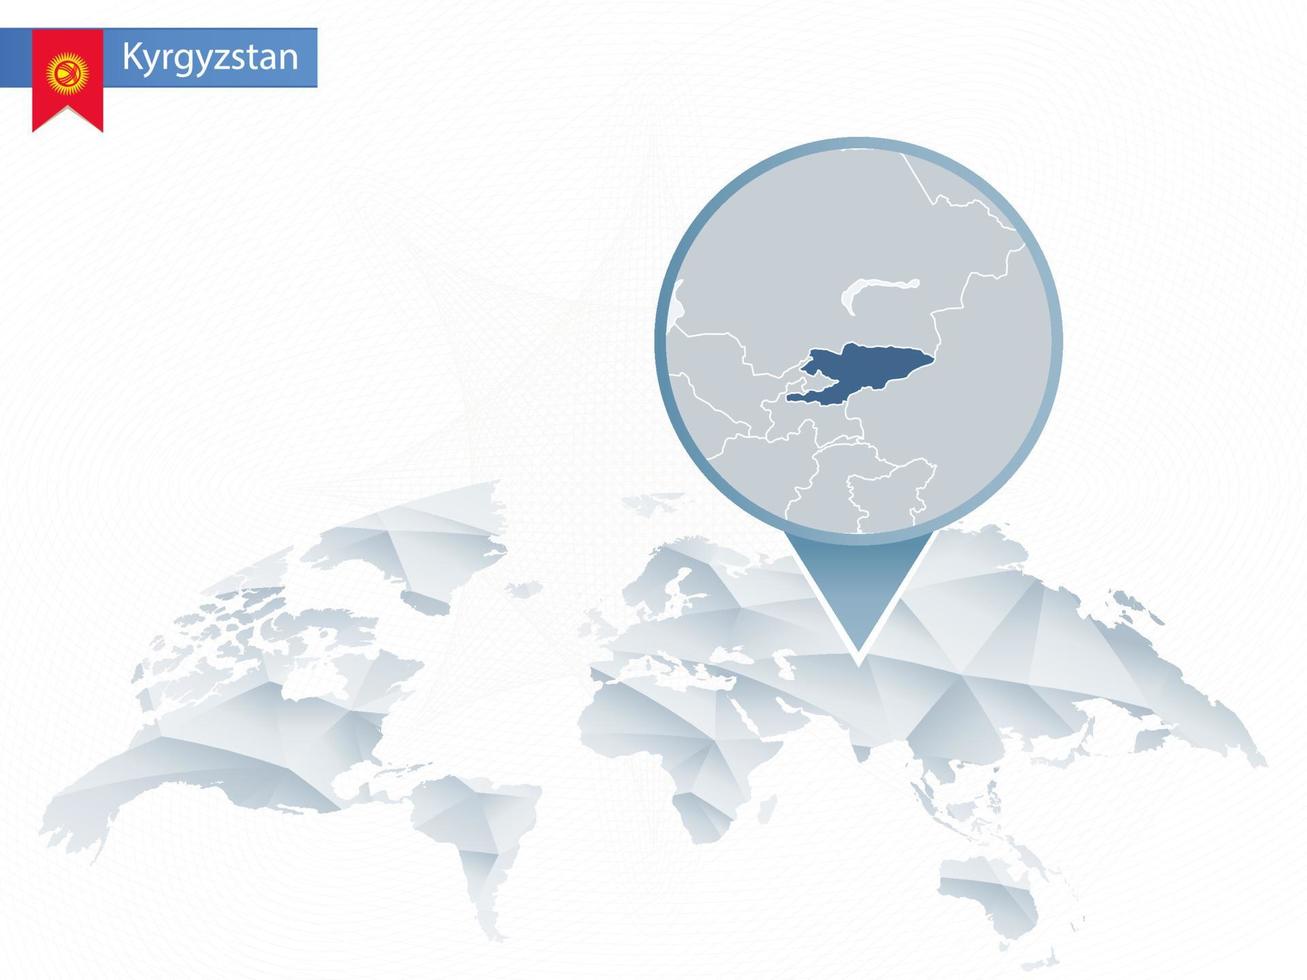 mapa-múndi abstrato arredondado com mapa detalhado fixado do Quirguistão. vetor